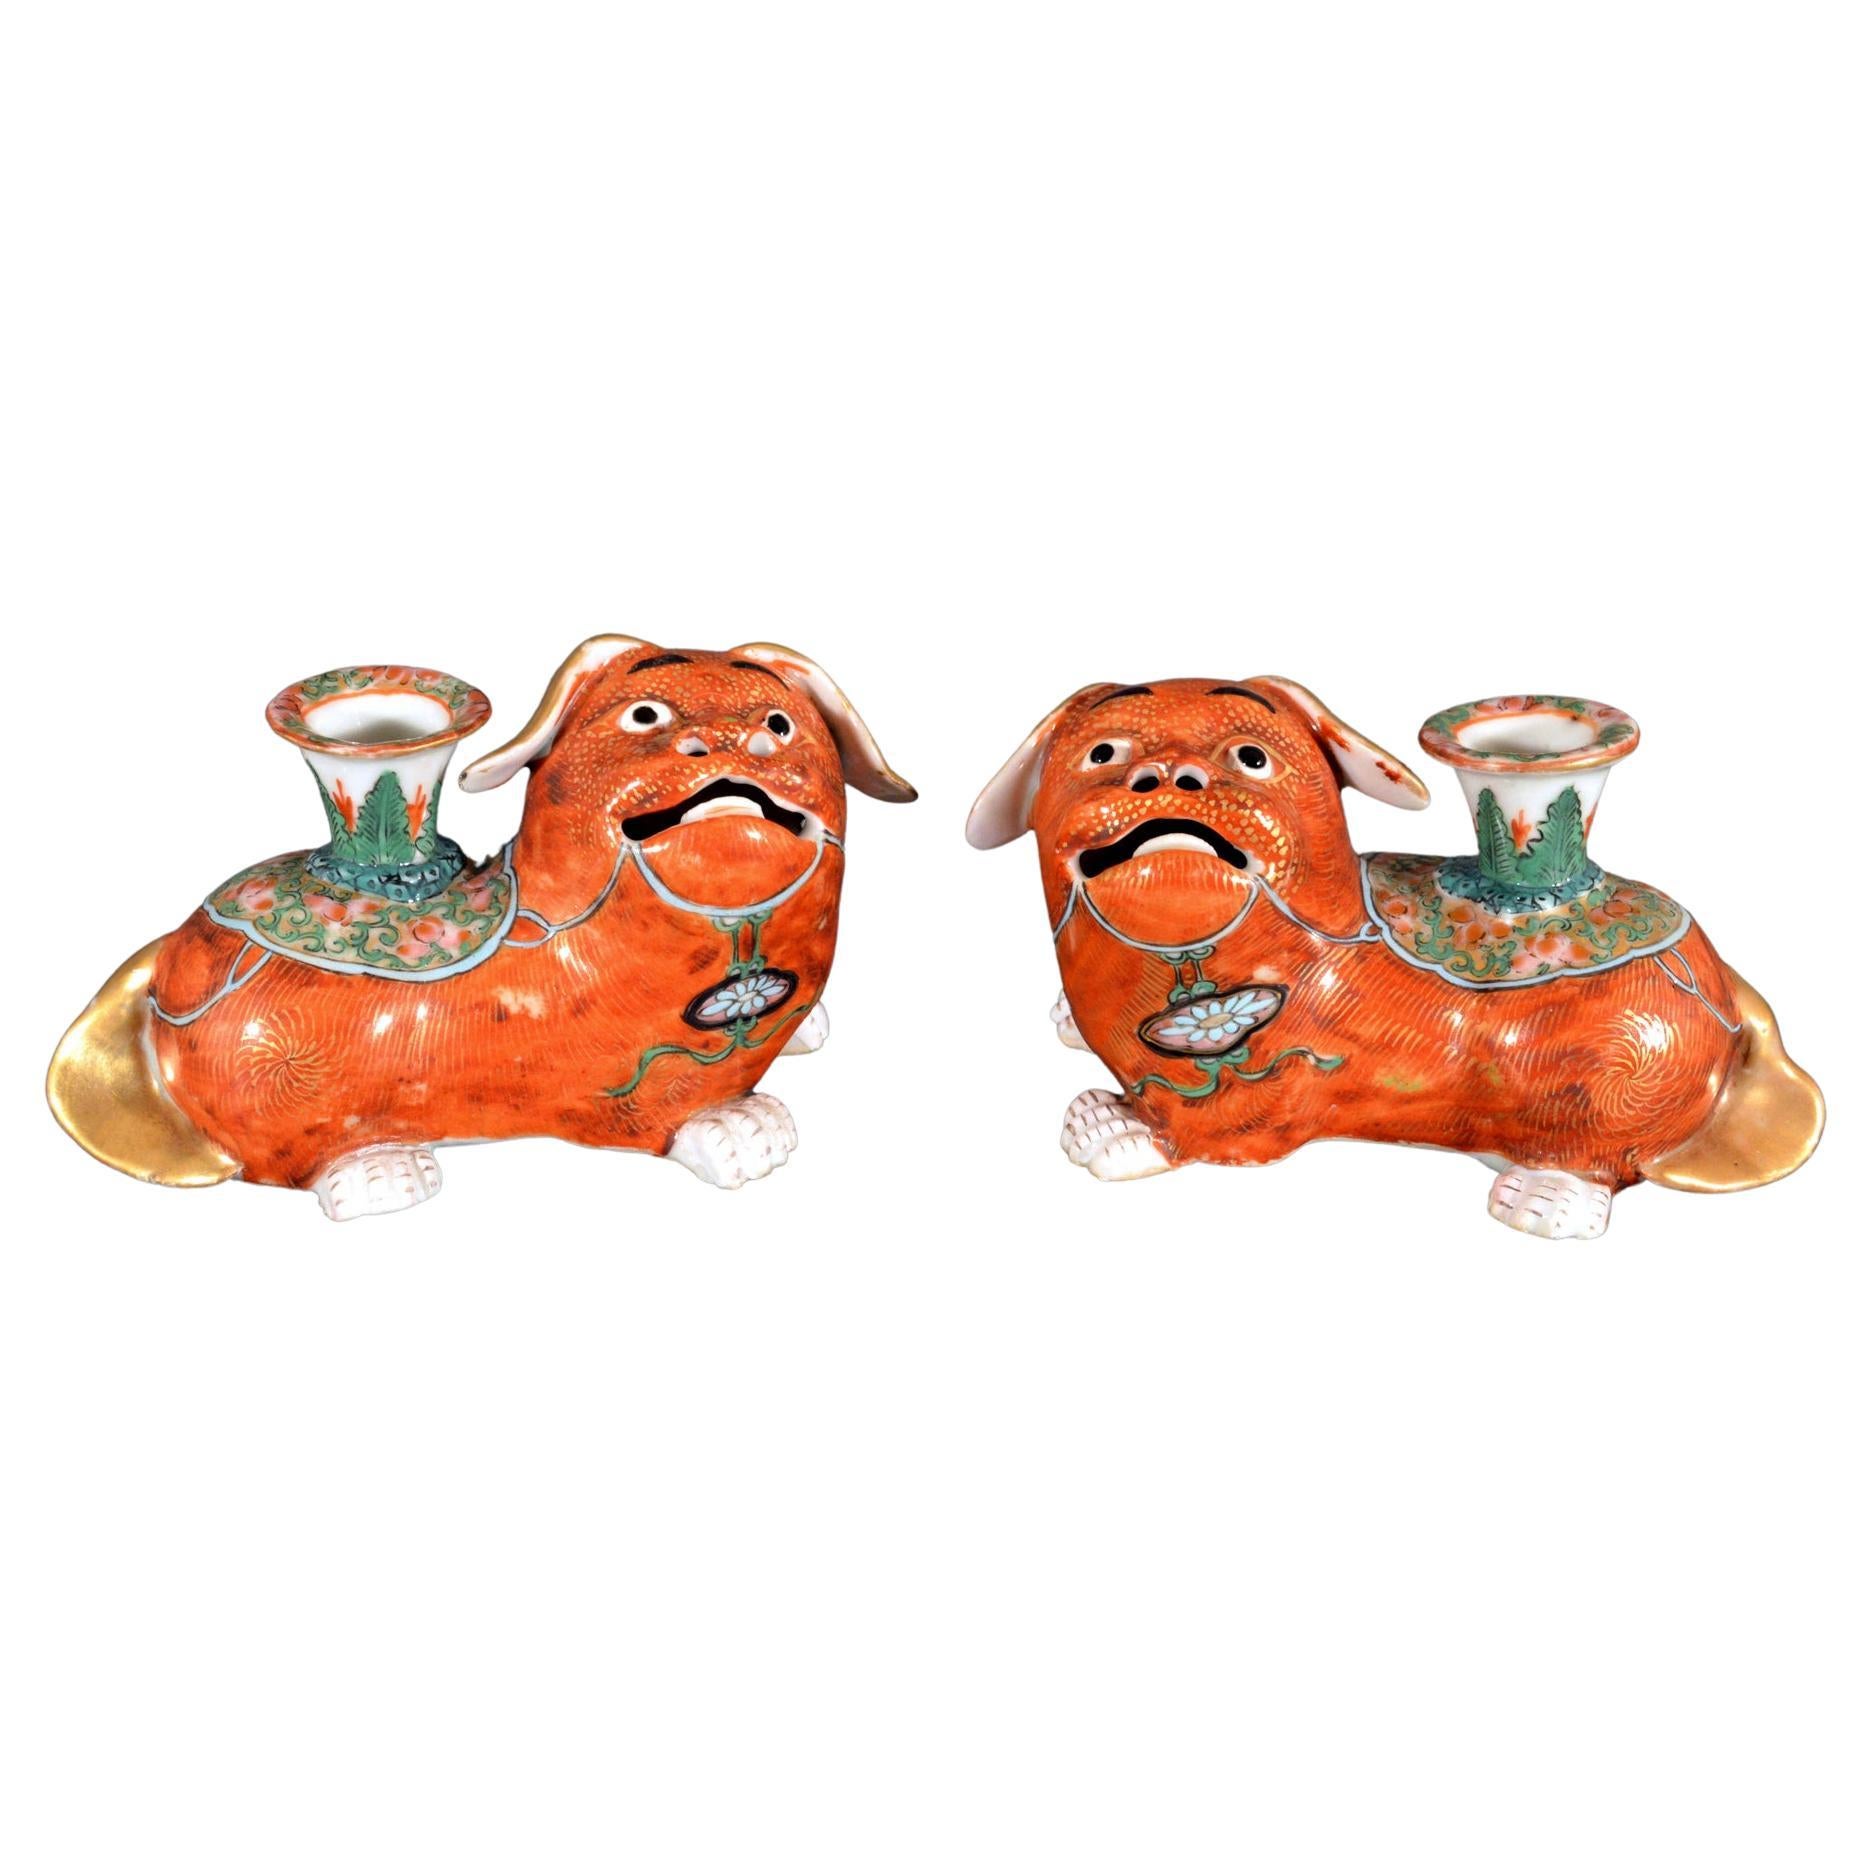 Paar Foo Dog-Kerzenständer aus chinesischem Exportporzellan, um 1840-1860